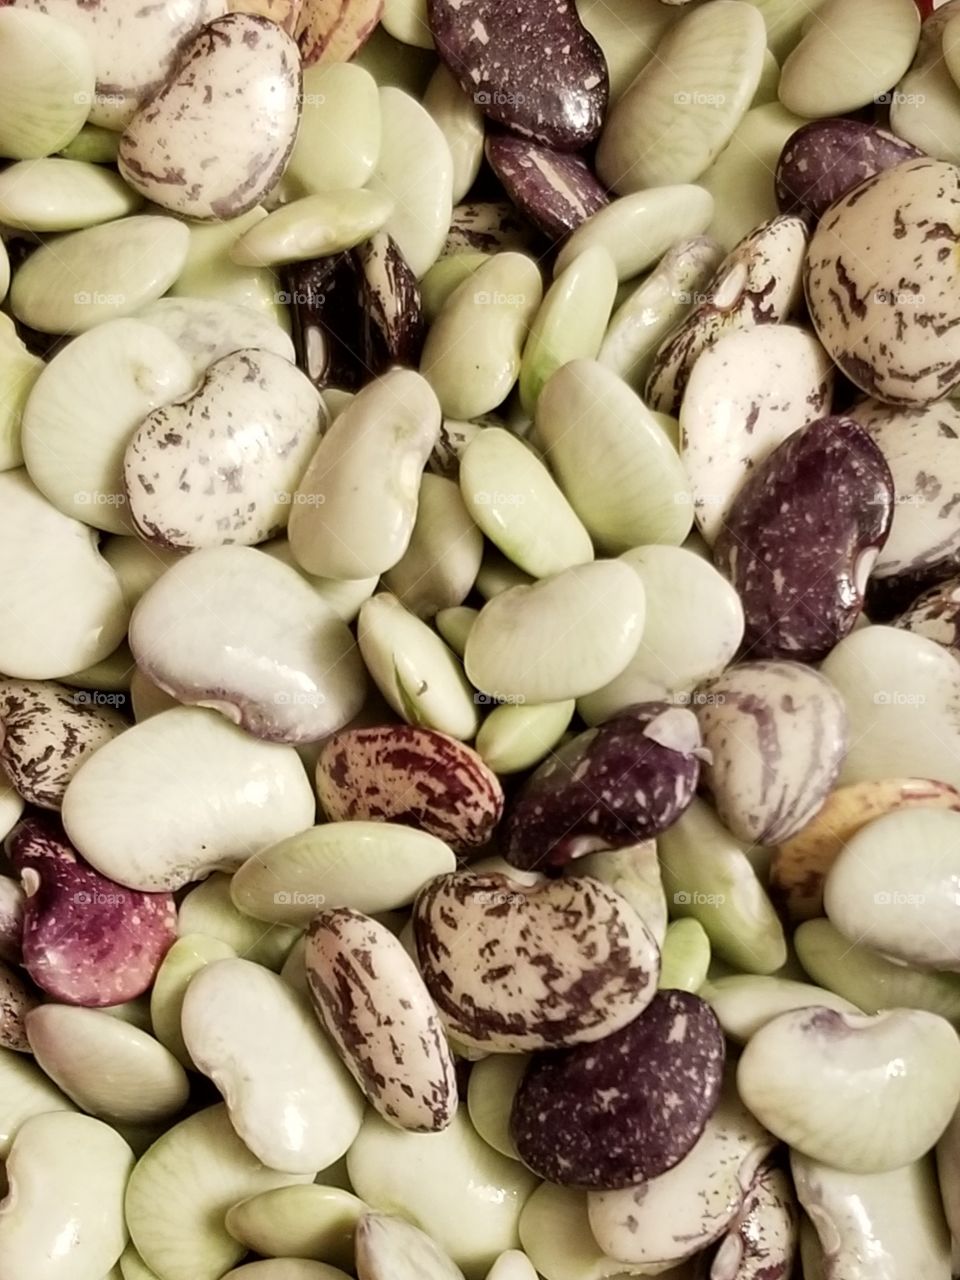 Mixed unshelled, fresh garden beans.